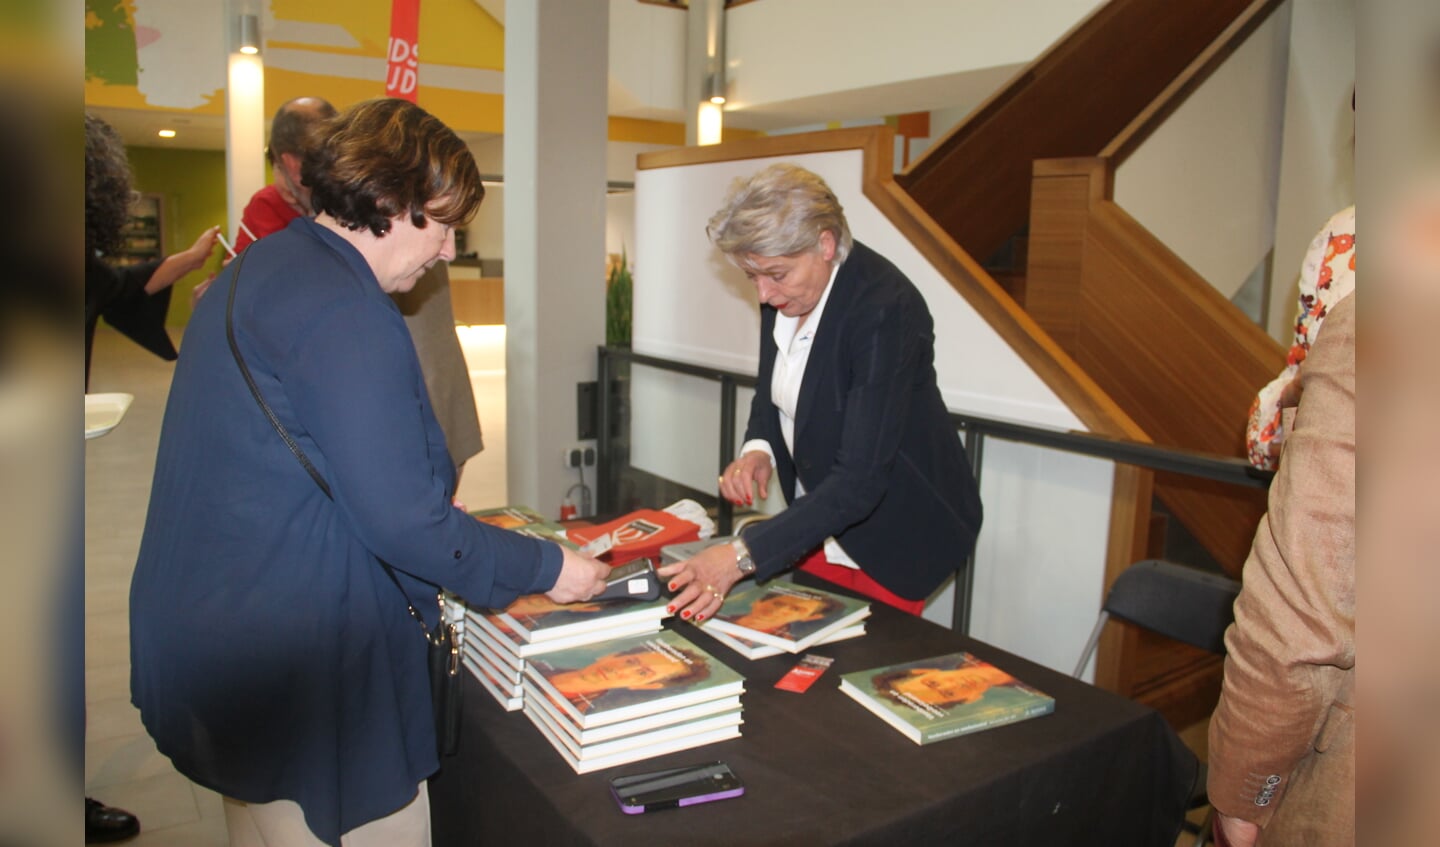 Het boek 'Vastberaden en Veelbelovend' van Frederieke Jeletich was tijdens deze bijeenkomst ook te koop. Foto: Lineke Voltman